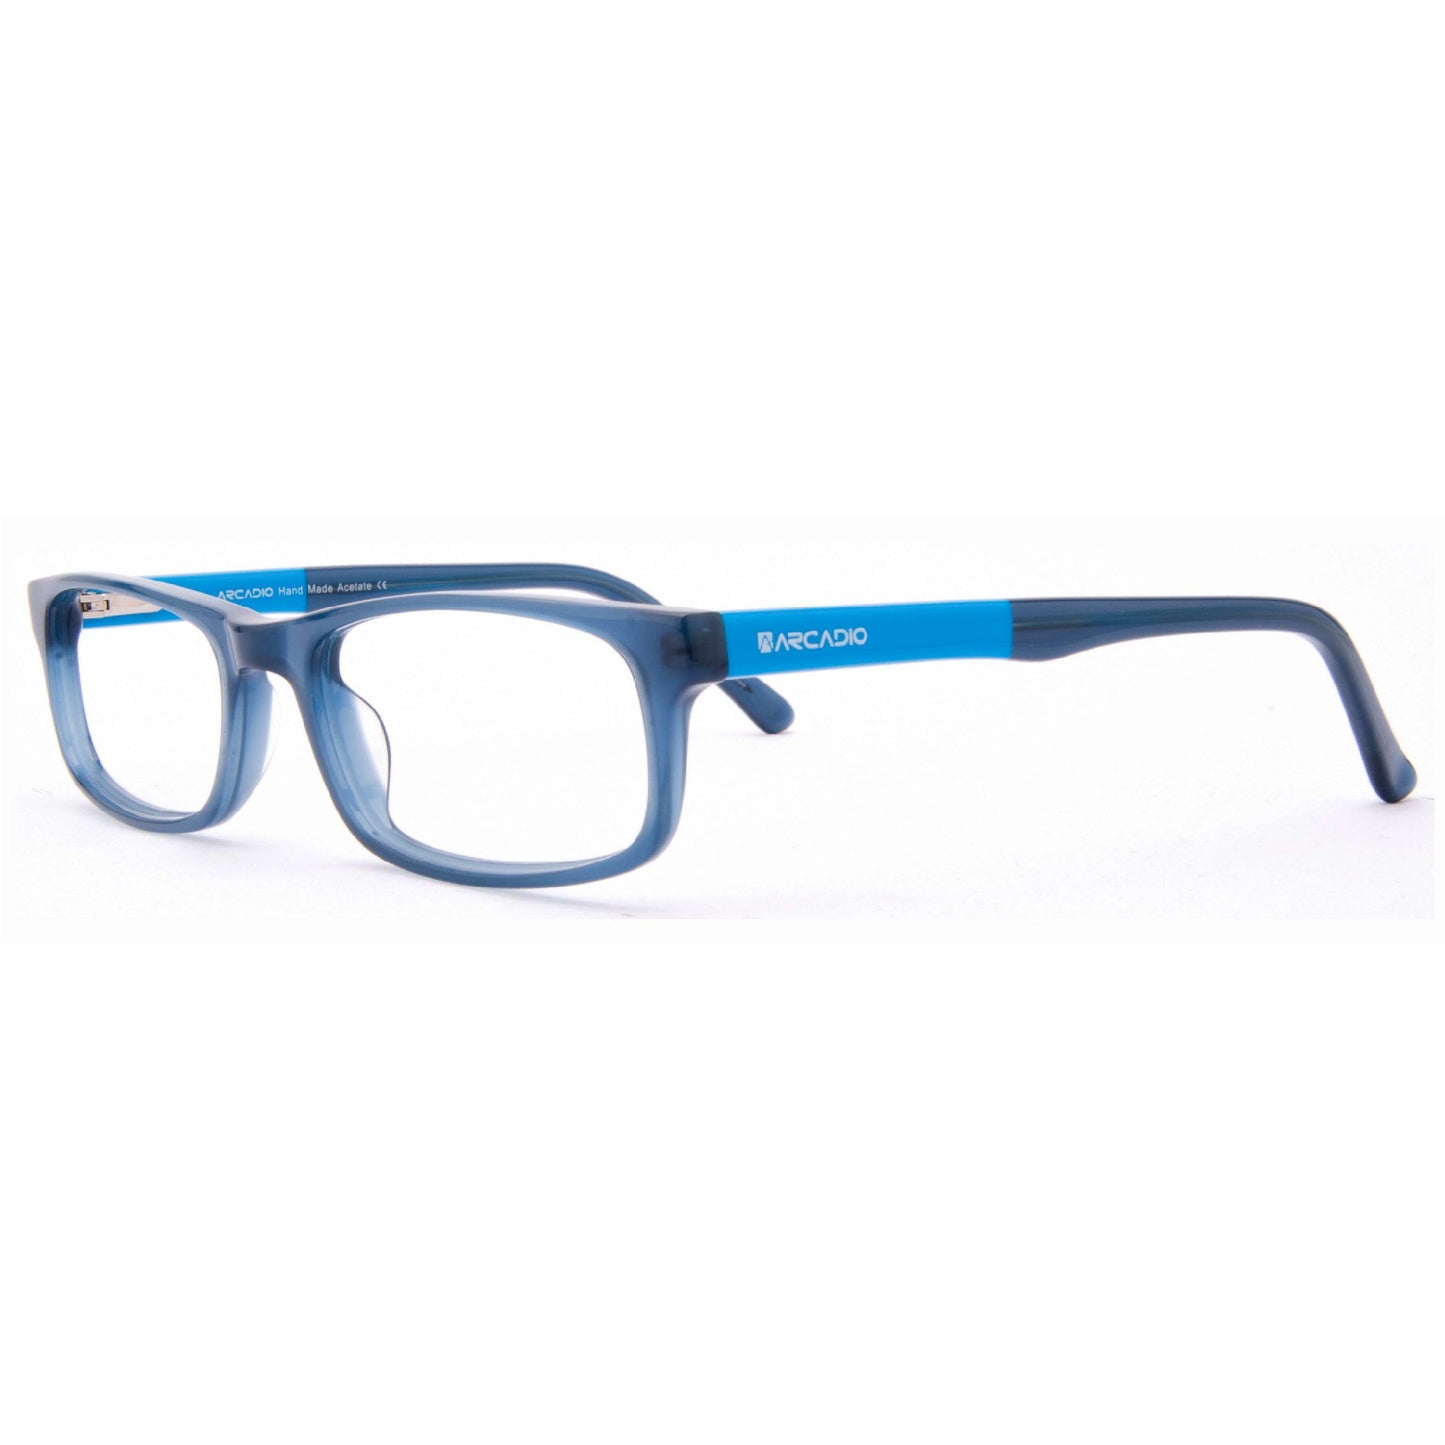 BRAVO Minimalist Eyeglasses for Teens SF4474 ARCADIO